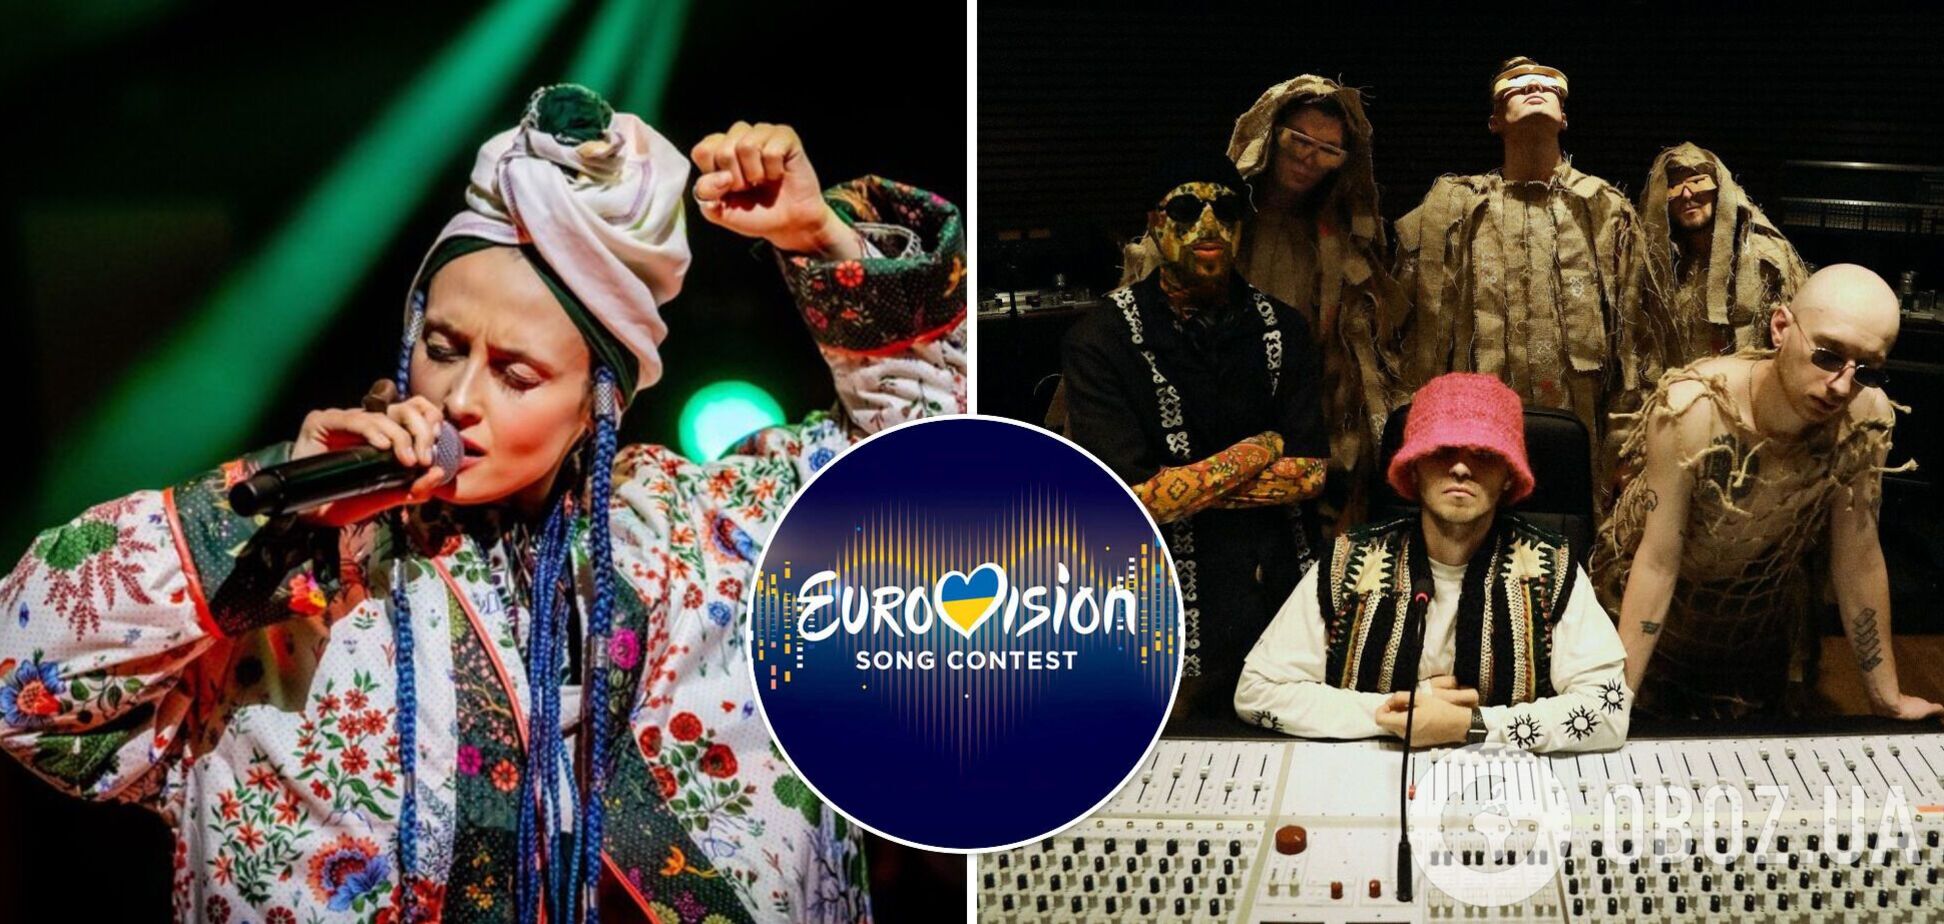 Продюсер Яна Прядко рассказала о возможной дисквалификации Украины с Евровидения из-за отсутствия участника